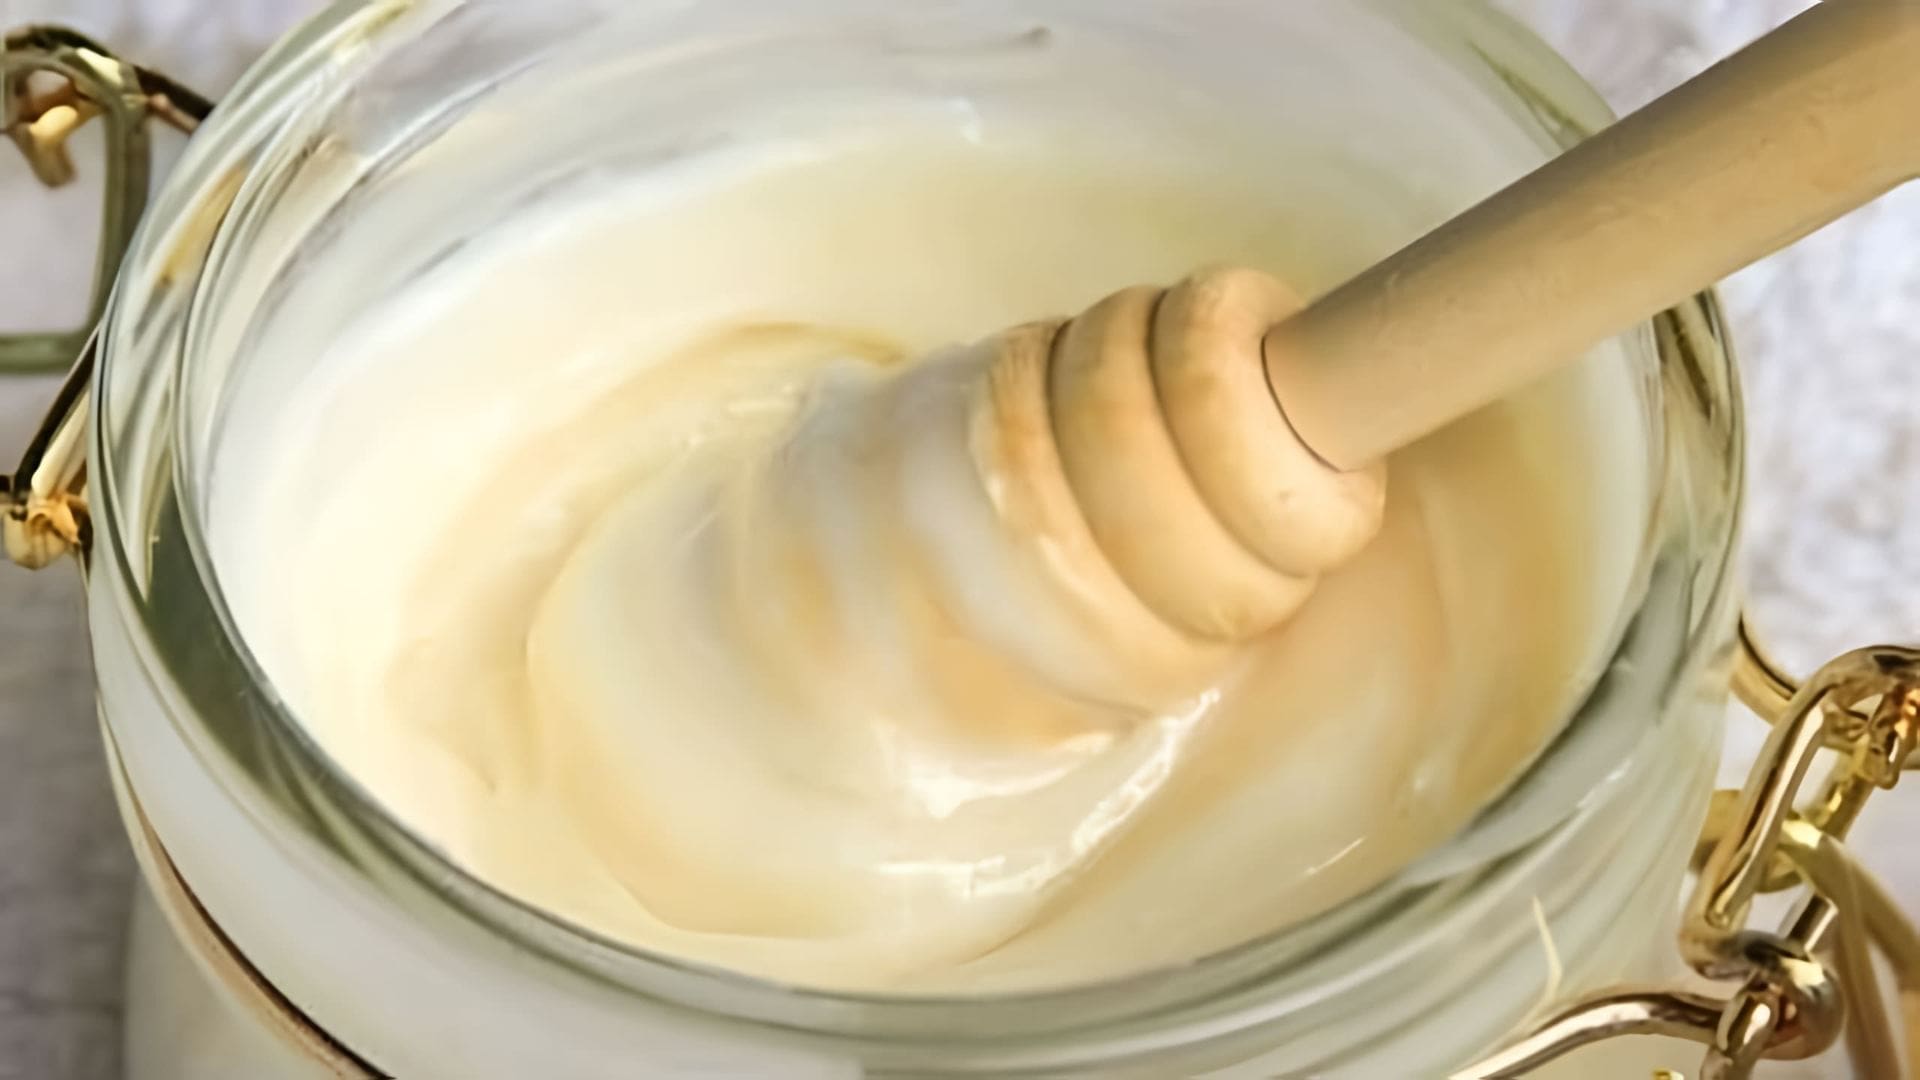 В этом видео демонстрируется процесс приготовления крем-меда в домашних условиях